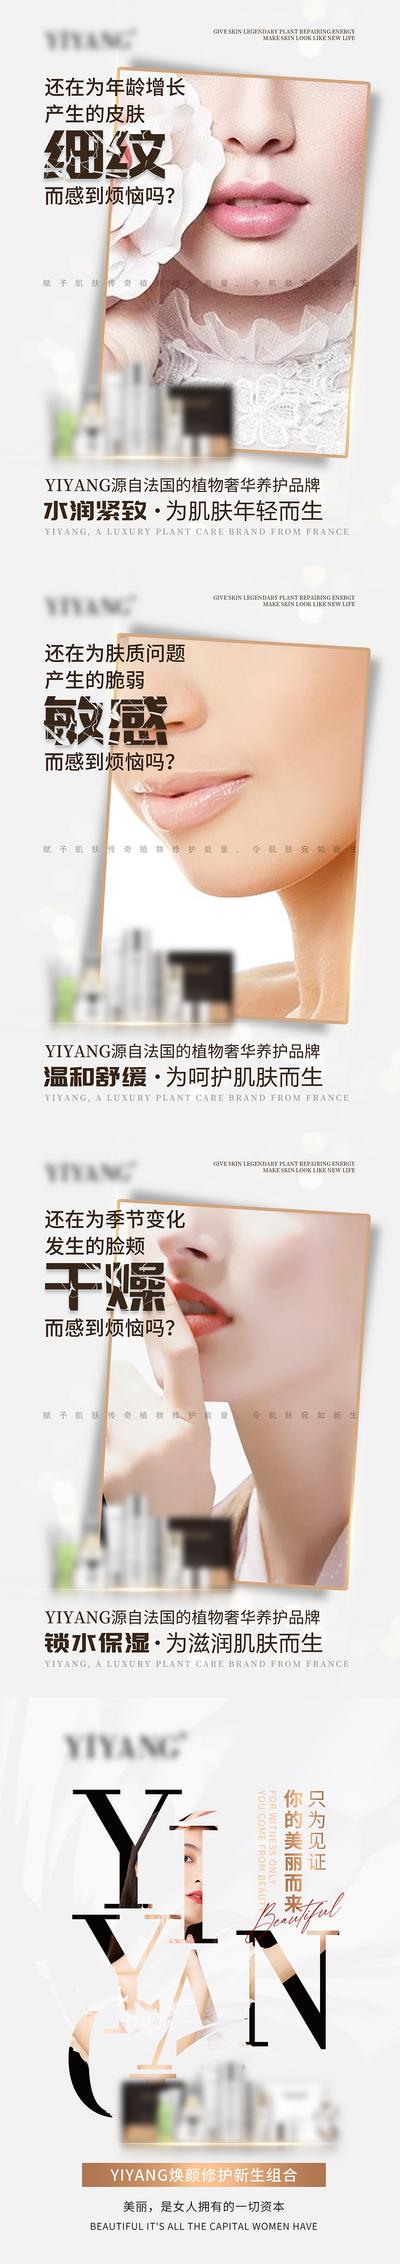 南门网 海报 医美 化妆品 美肤 护肤 宣传